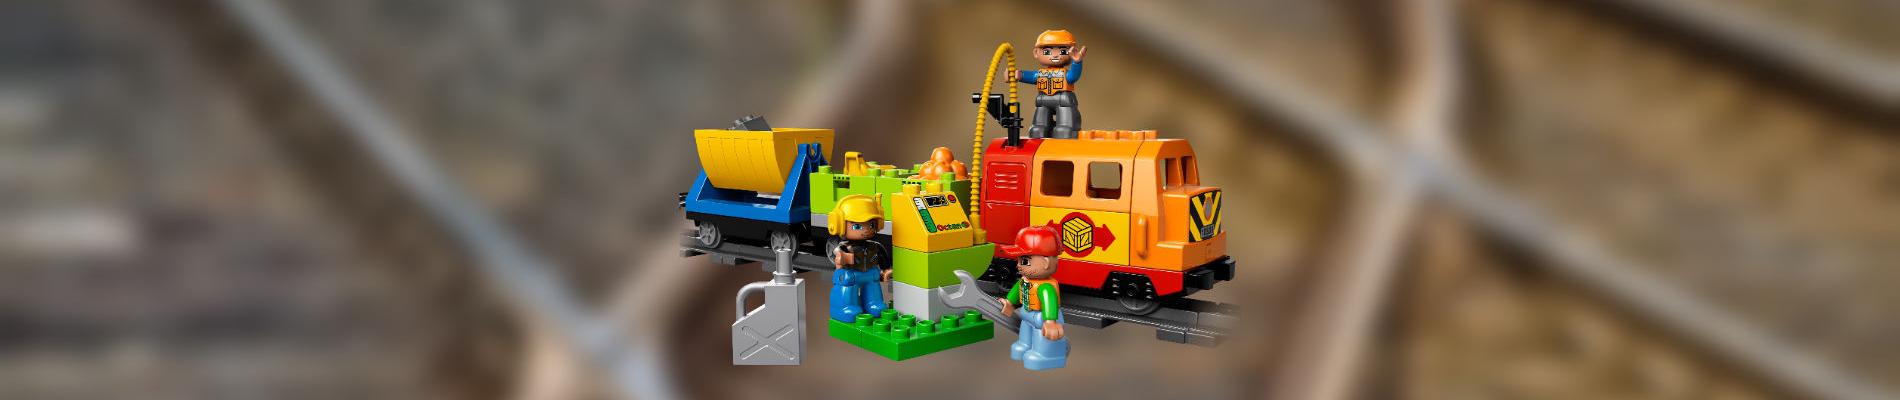 Locomotive Lego duplo avec des rails en arrière-plan floutés